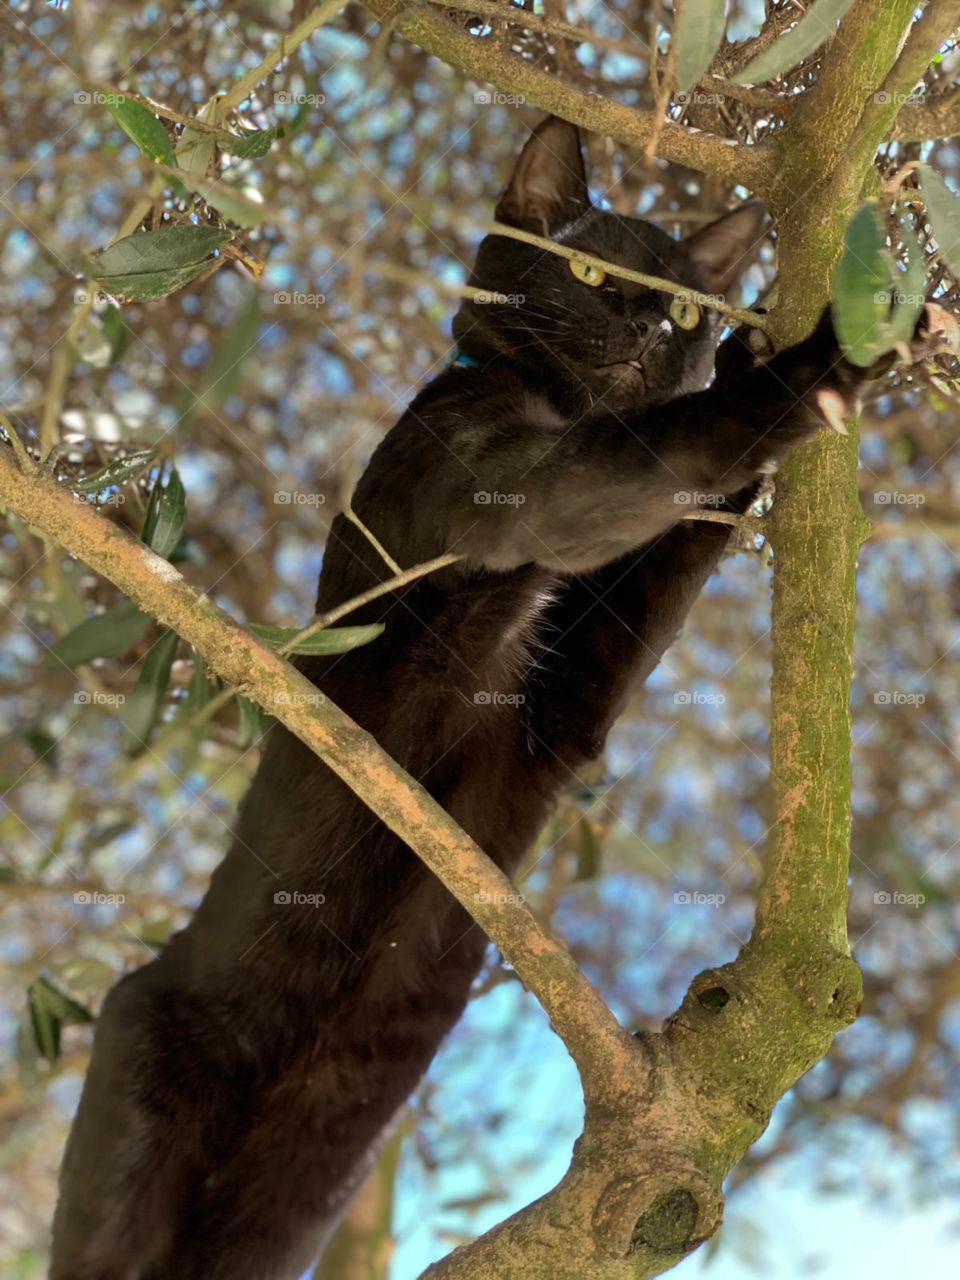 Pampa, gatito ojos verdes brillantes, naturaleza, trepando un árbol, juegos y diversión en la naturaleza. primavera.